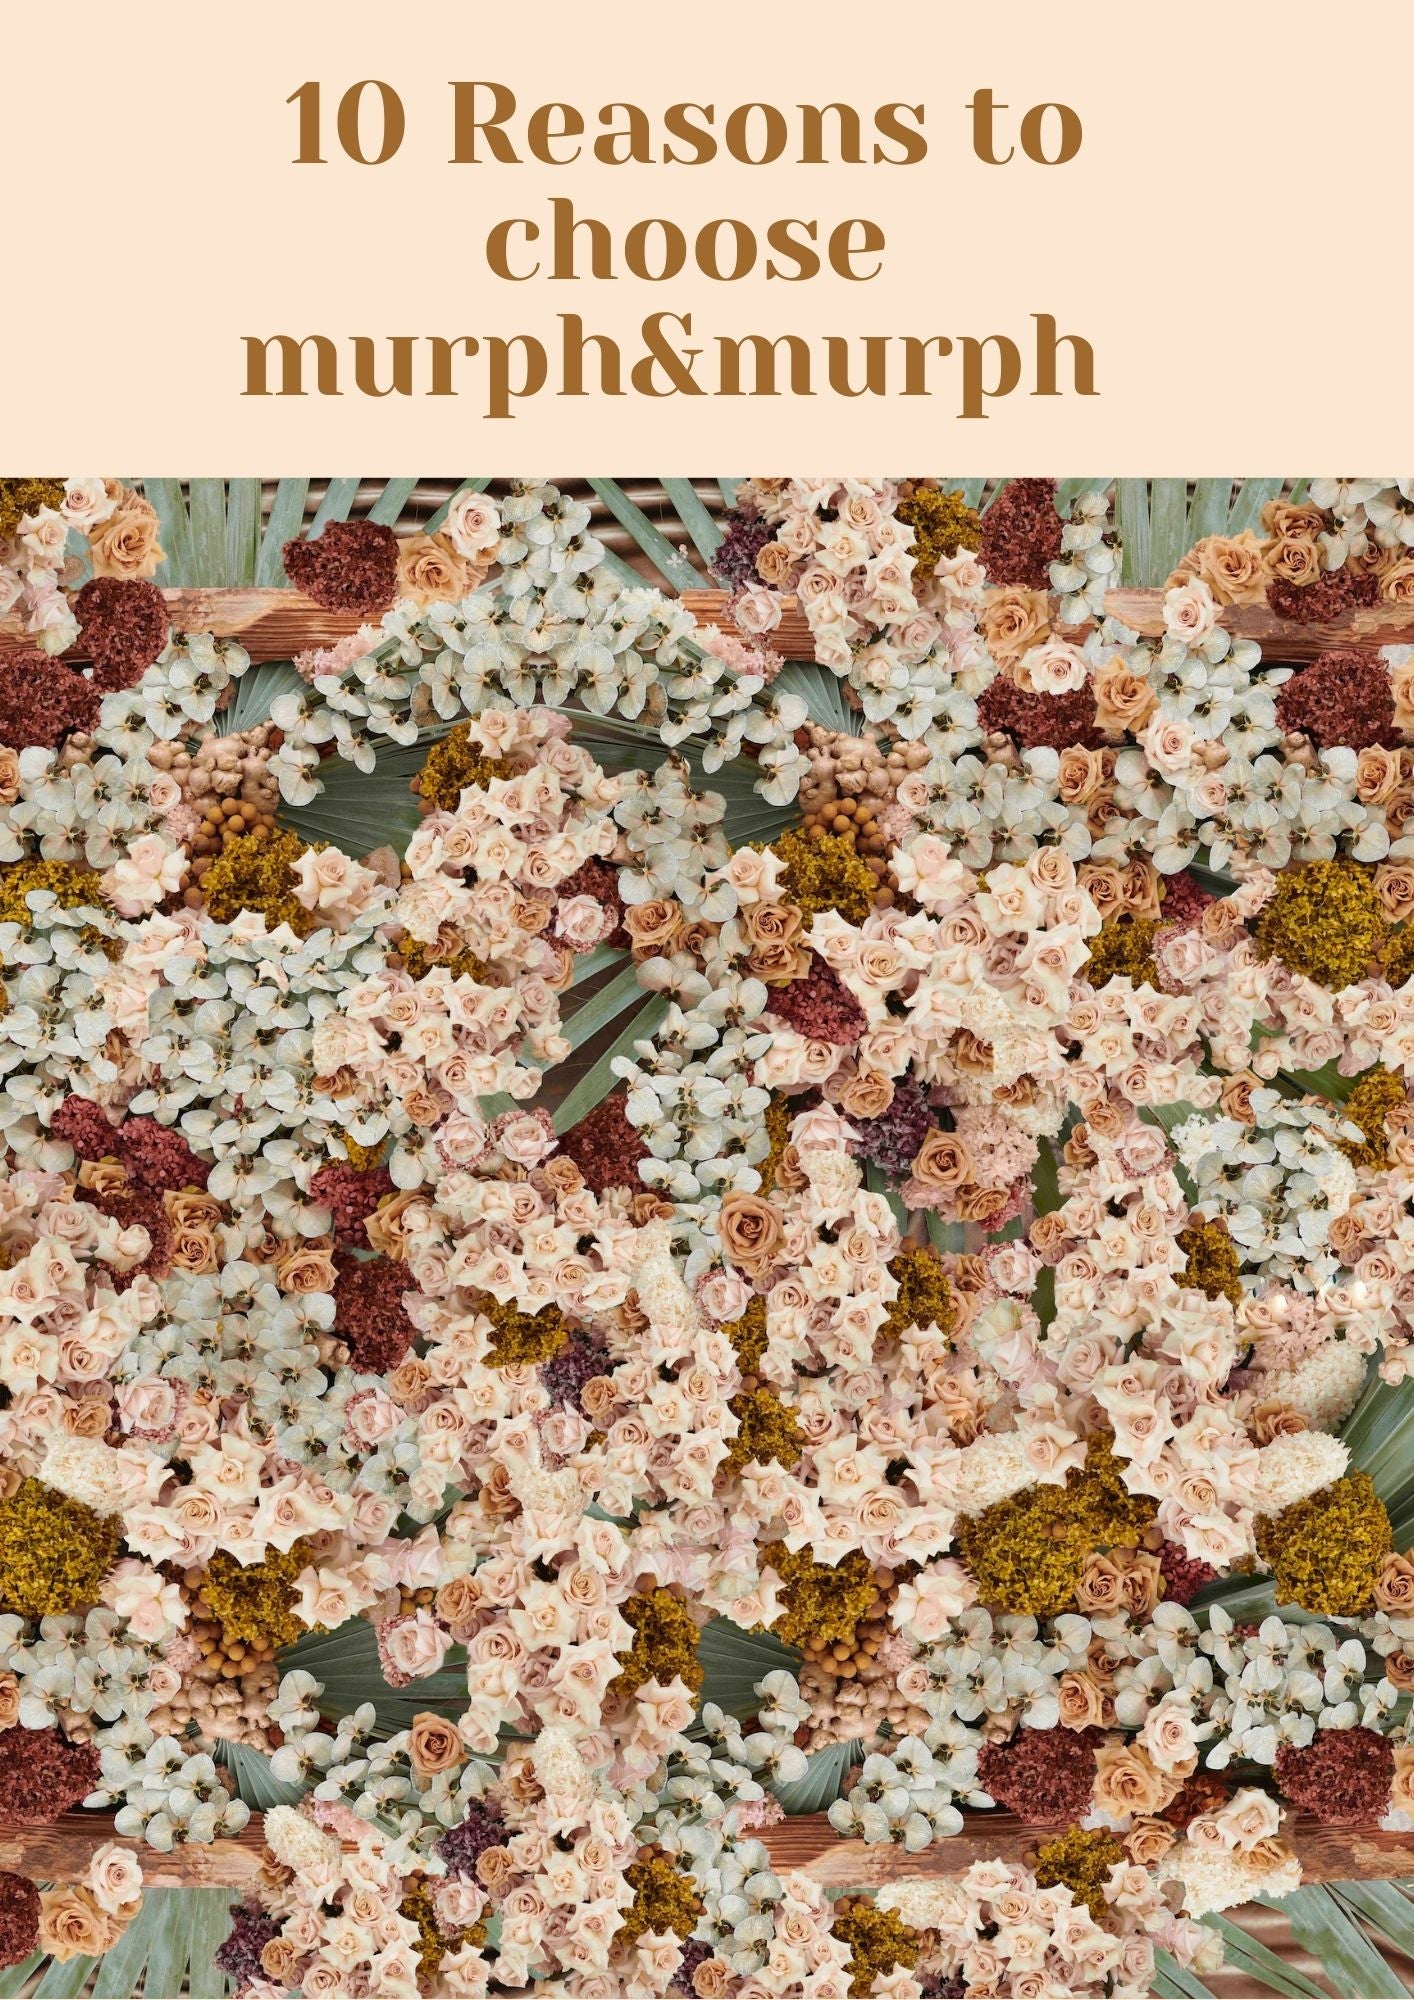 WHY THE MURPH&MURPH NEOPRENE PICNIC BLANKET